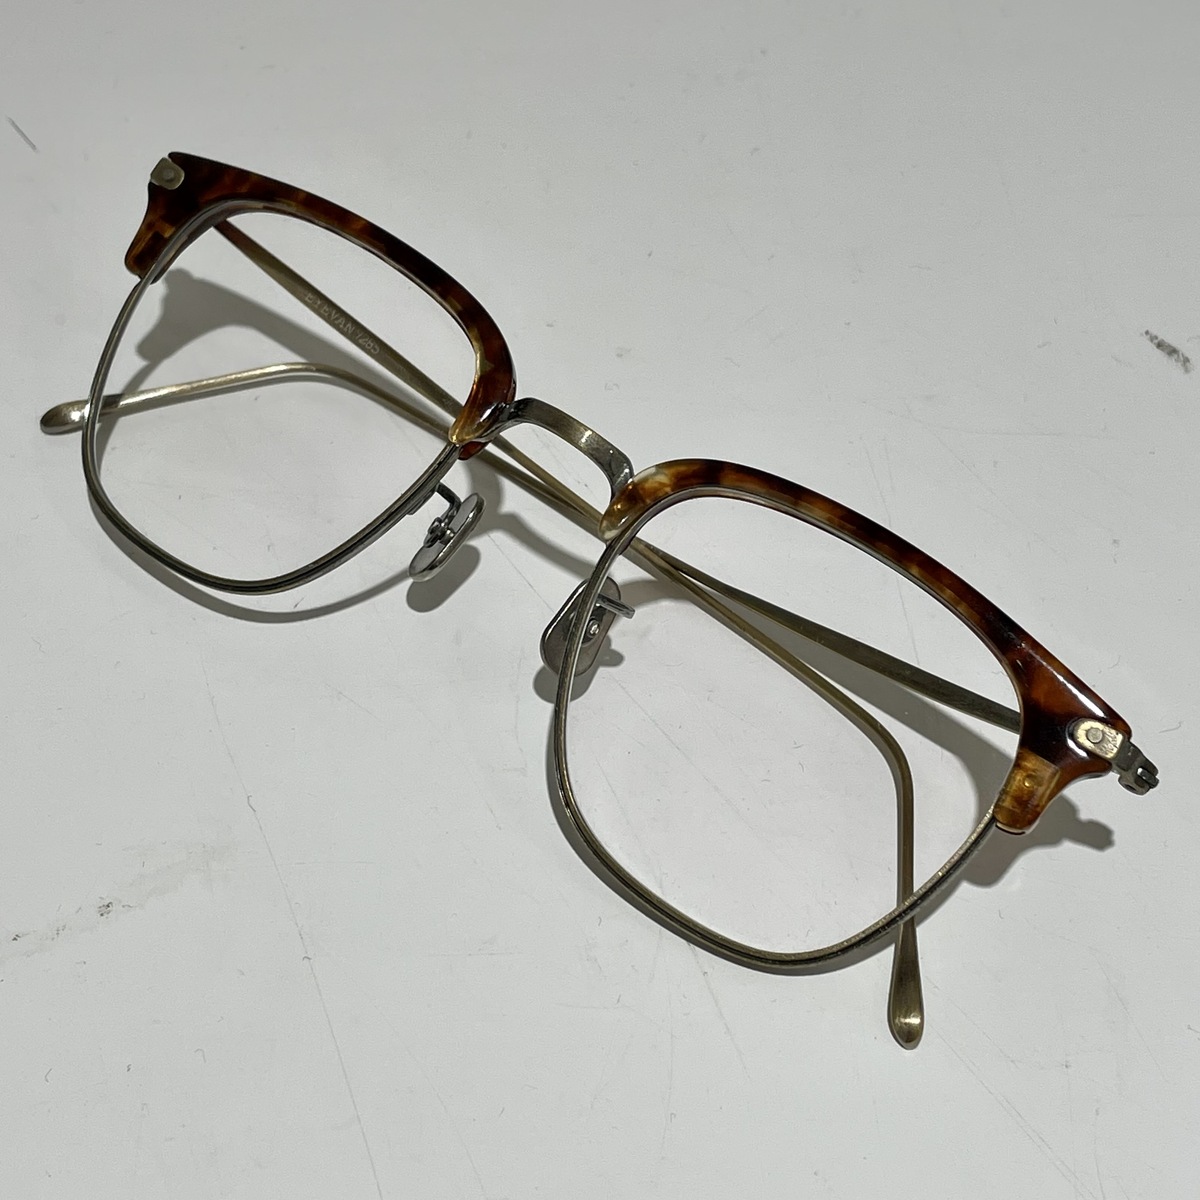 アイヴァン7285の639 c.3010 コンビネーションフレーム 眼鏡の買取実績です。